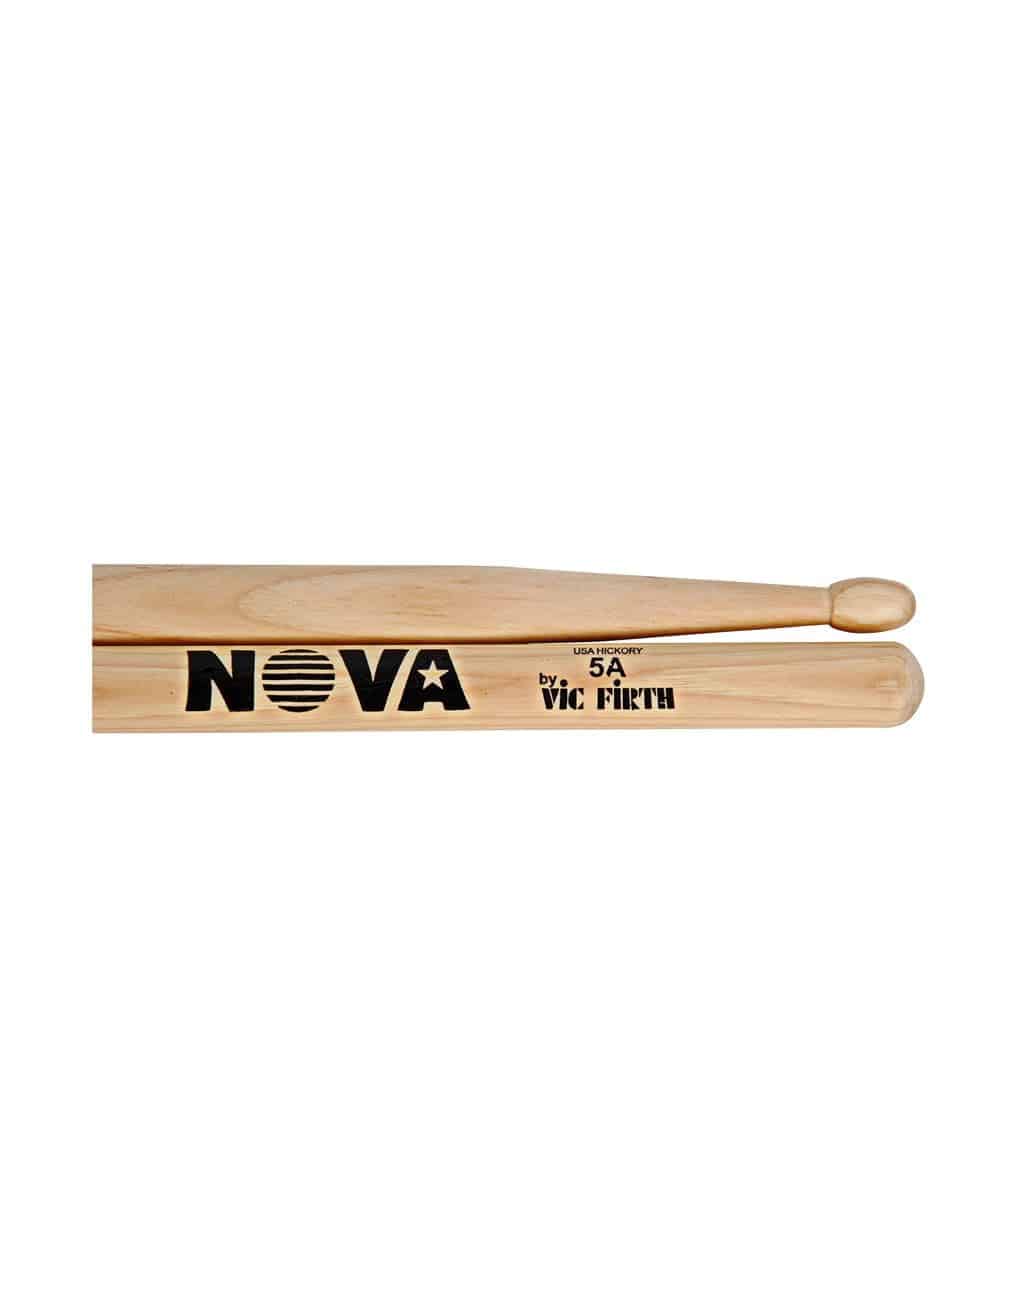 vic-firth-n5a-wood-bagketes-nova-huge-1.jpg